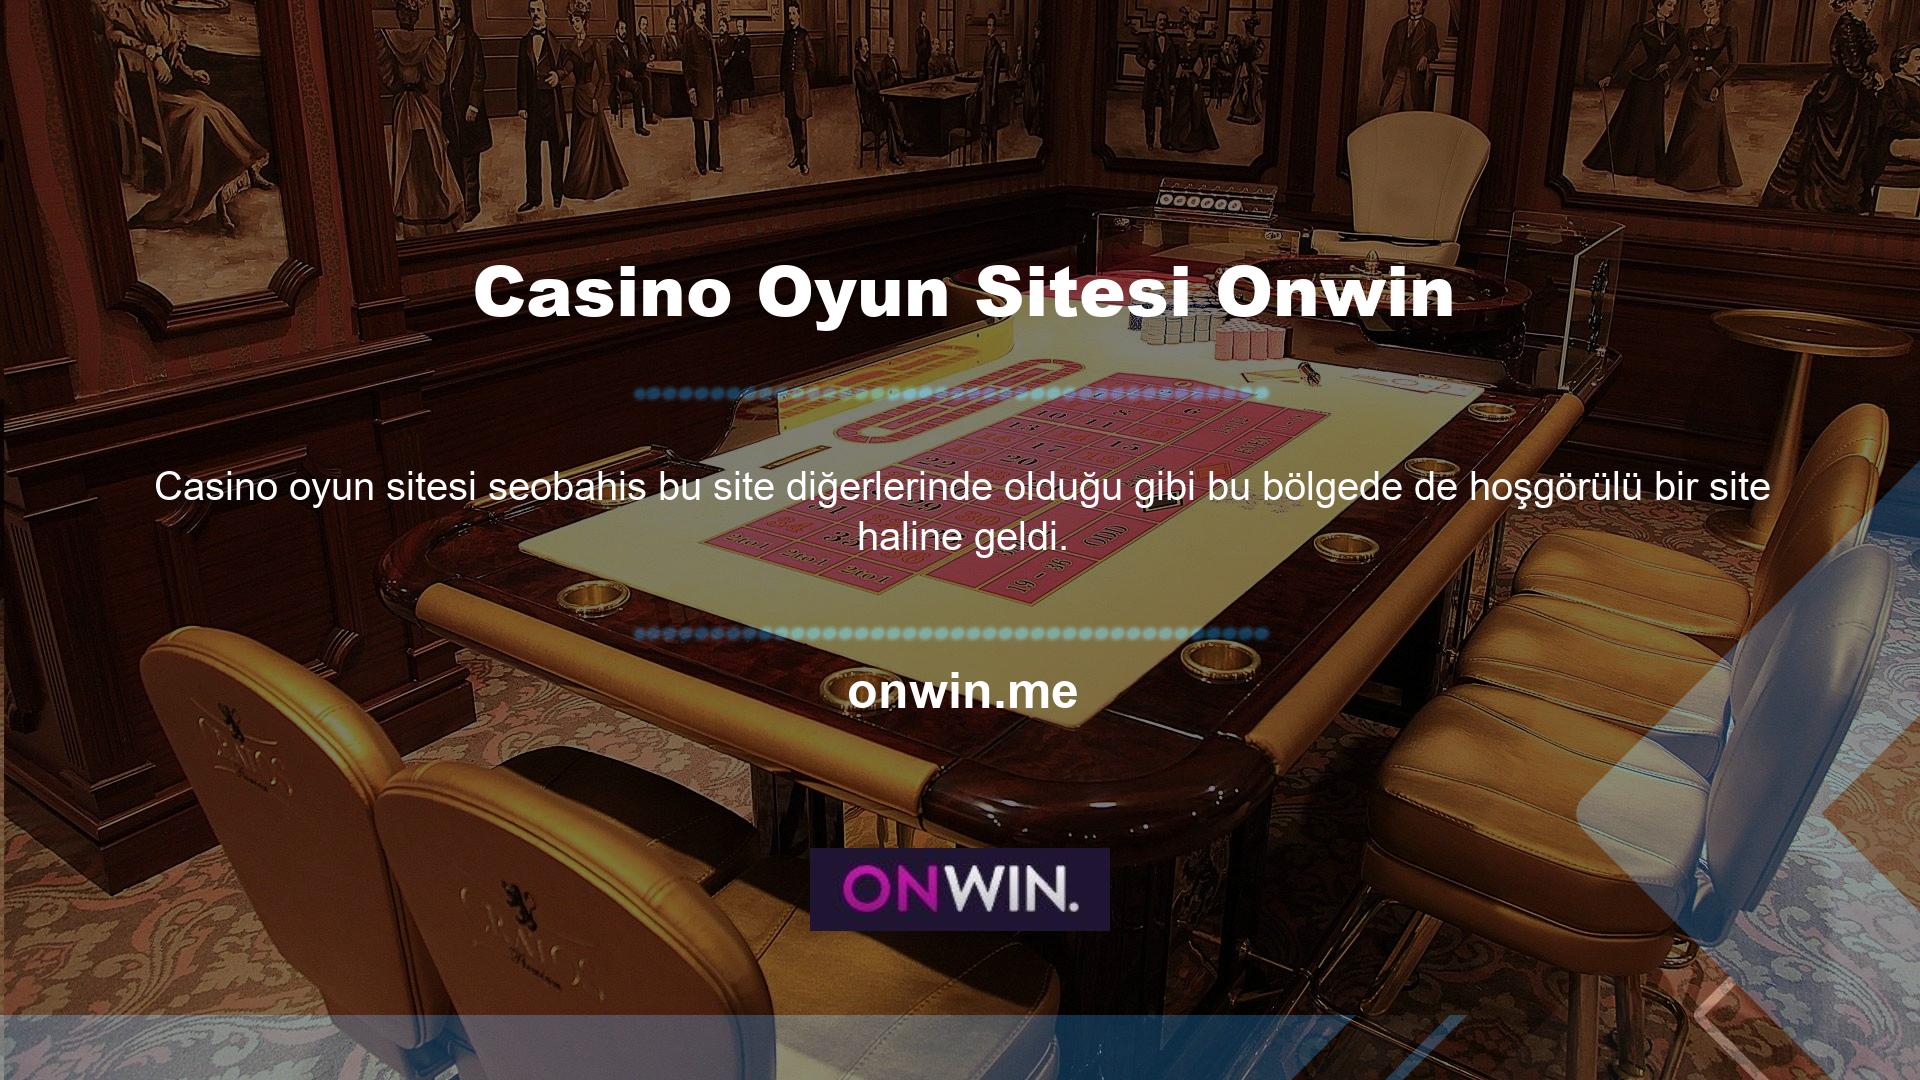 Bonuslar, sitede oynanan casino oyunlarına dönüştürülüp dönüştürülmemesine bakılmaksızın yatırım yapmak için kullanılmaktadır